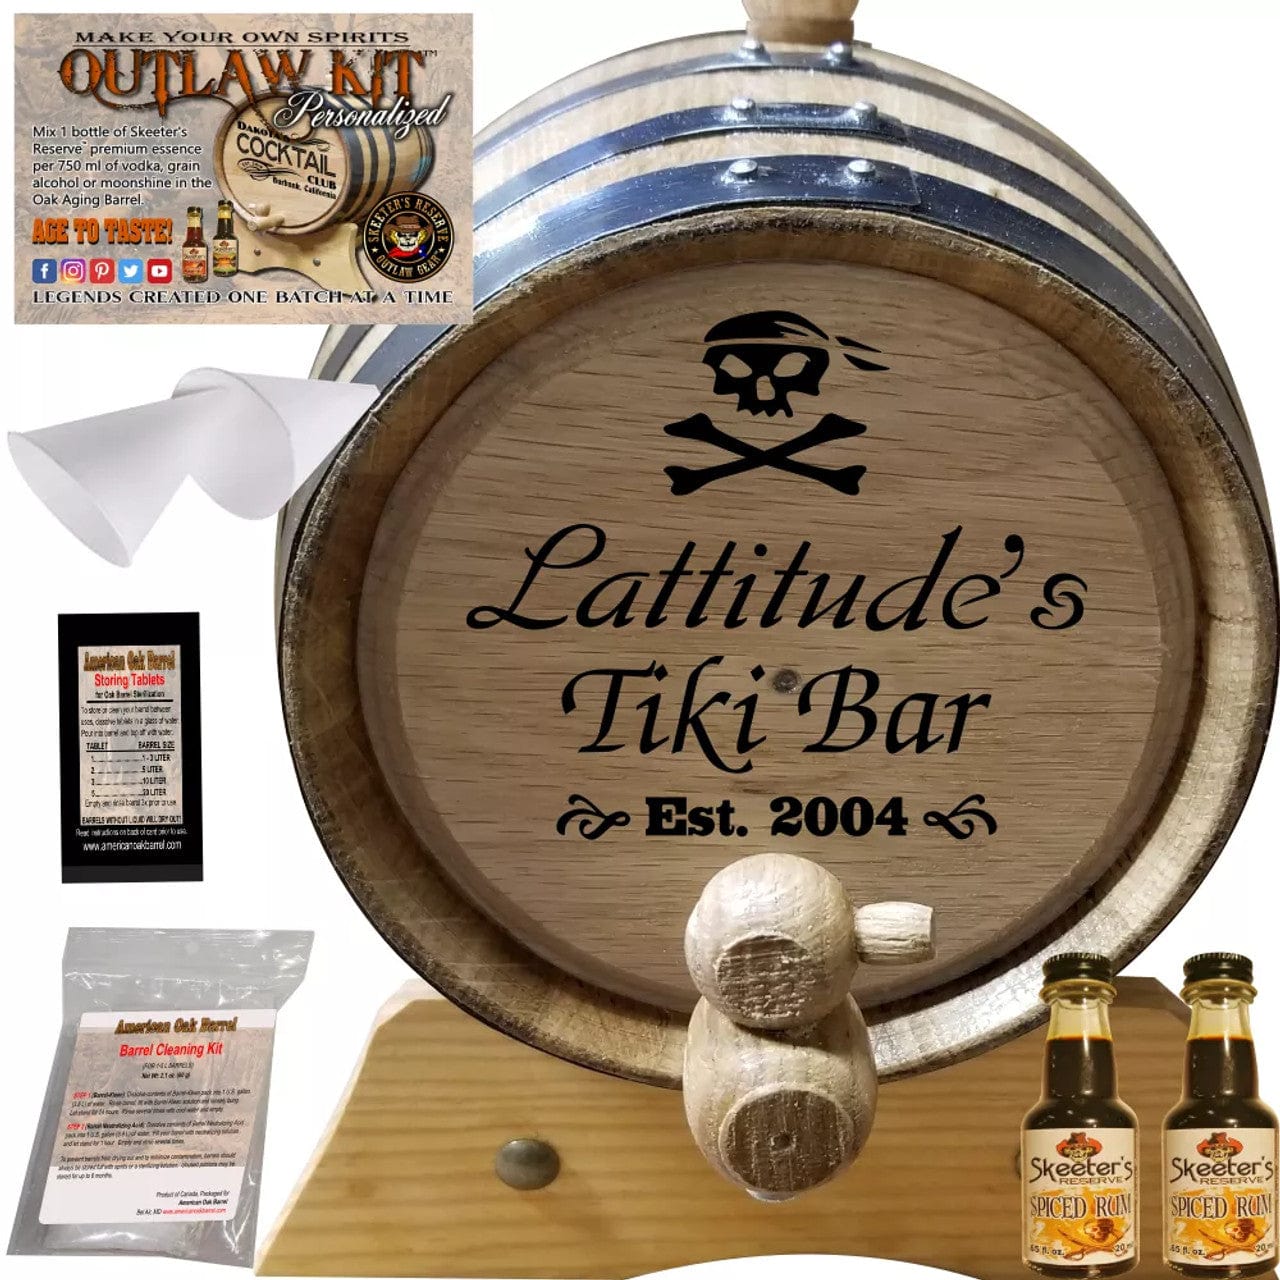 American Oak Barrel Outlaw Kits 1 Liter (.26 gallon) / Cherry Bourbon American Oak Barrel Personalized Outlaw Kit™ (026) Pirate Tiki Bar - Create Your Own Spirits